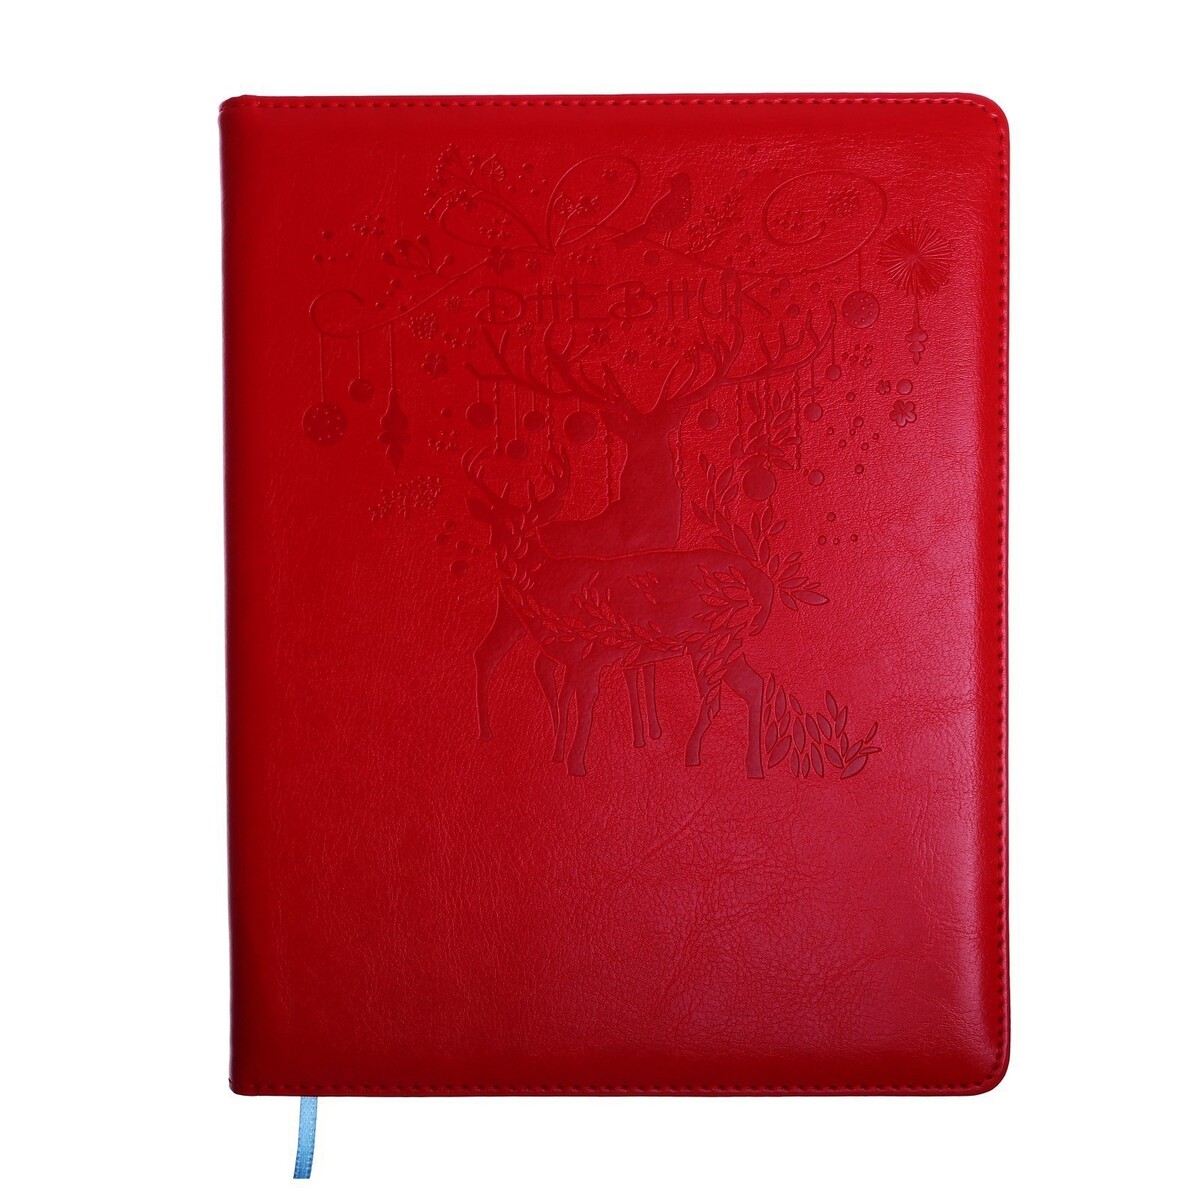 Дневник школьный, 5-11 класс, обложка пвх школьный дневник colored star